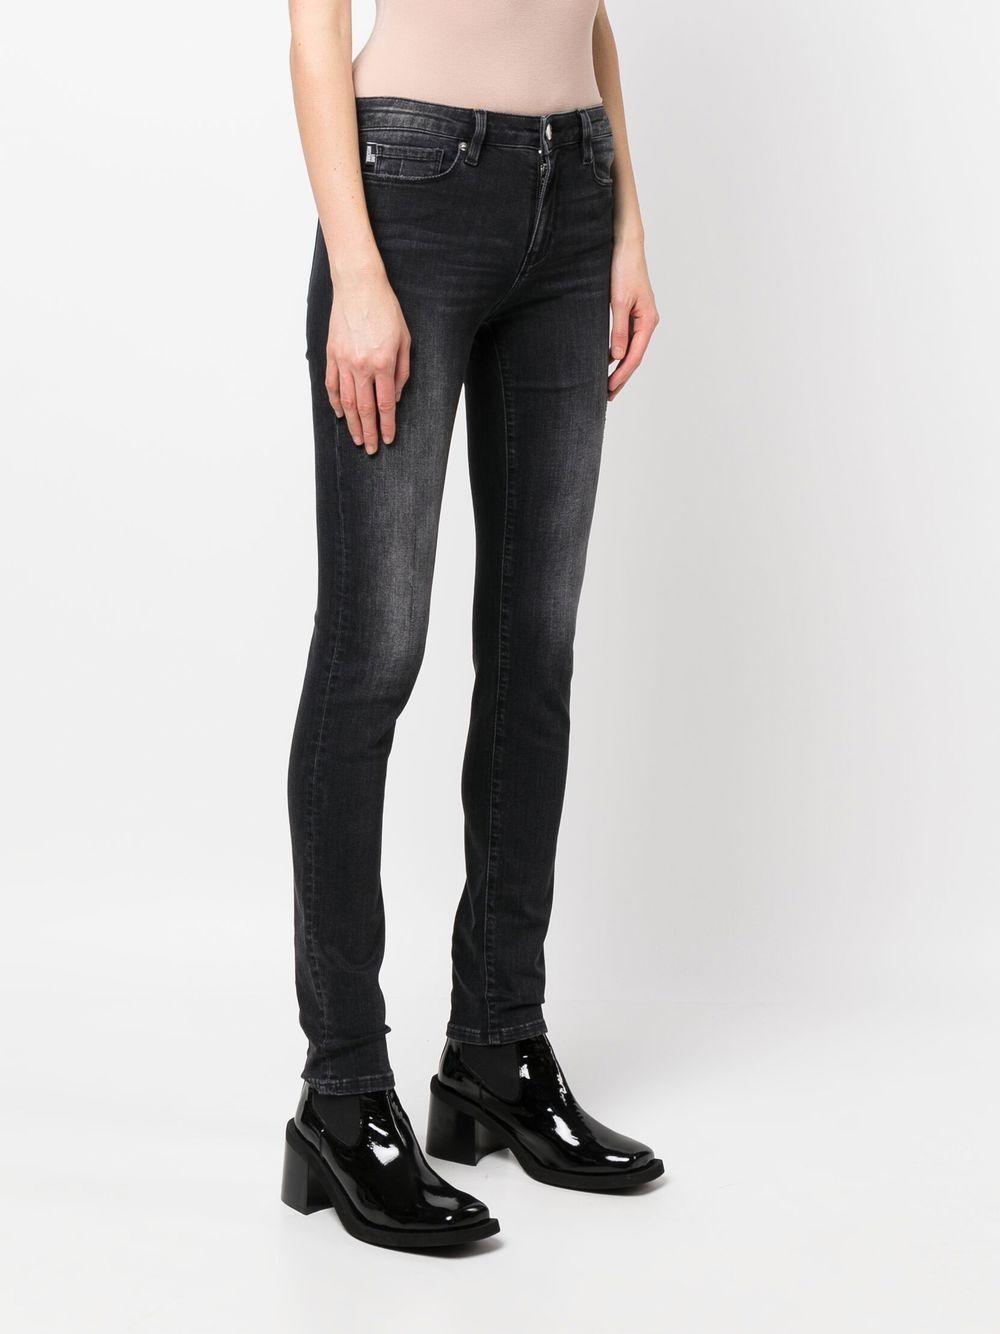 Jeans Skinny con Logo Love Moschino / Grigio - Ideal Moda